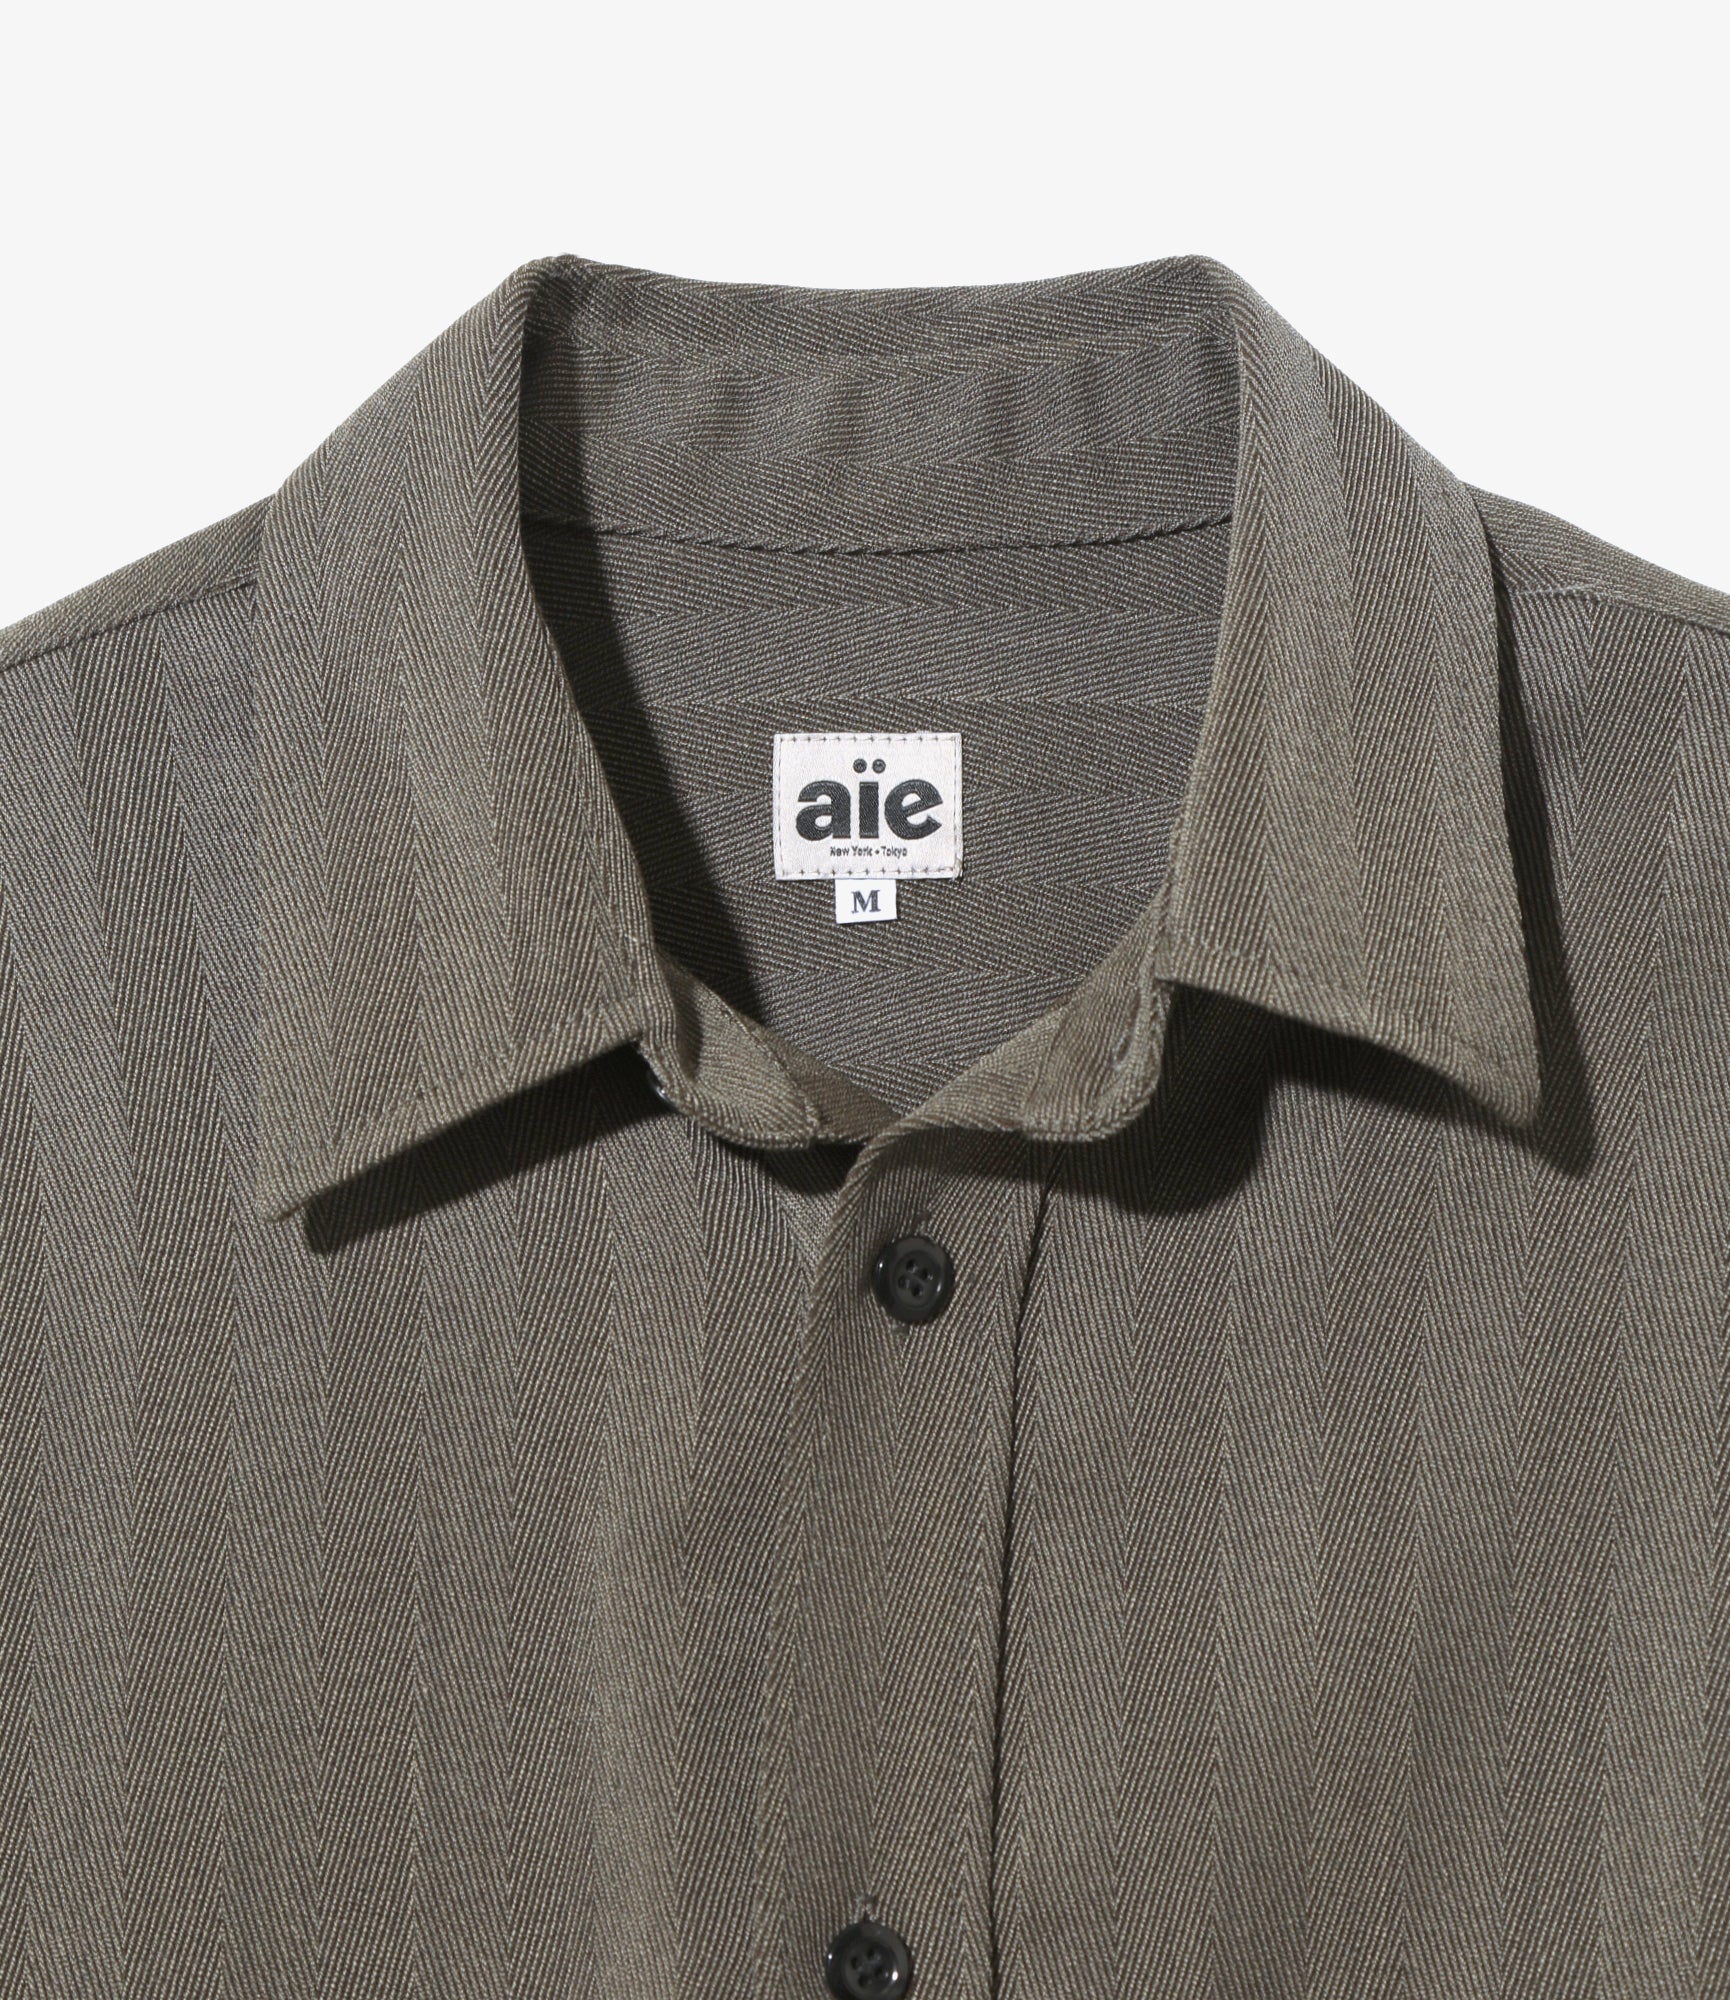 AIE BTG Shirt - PE/W Herringbone - Charcoal